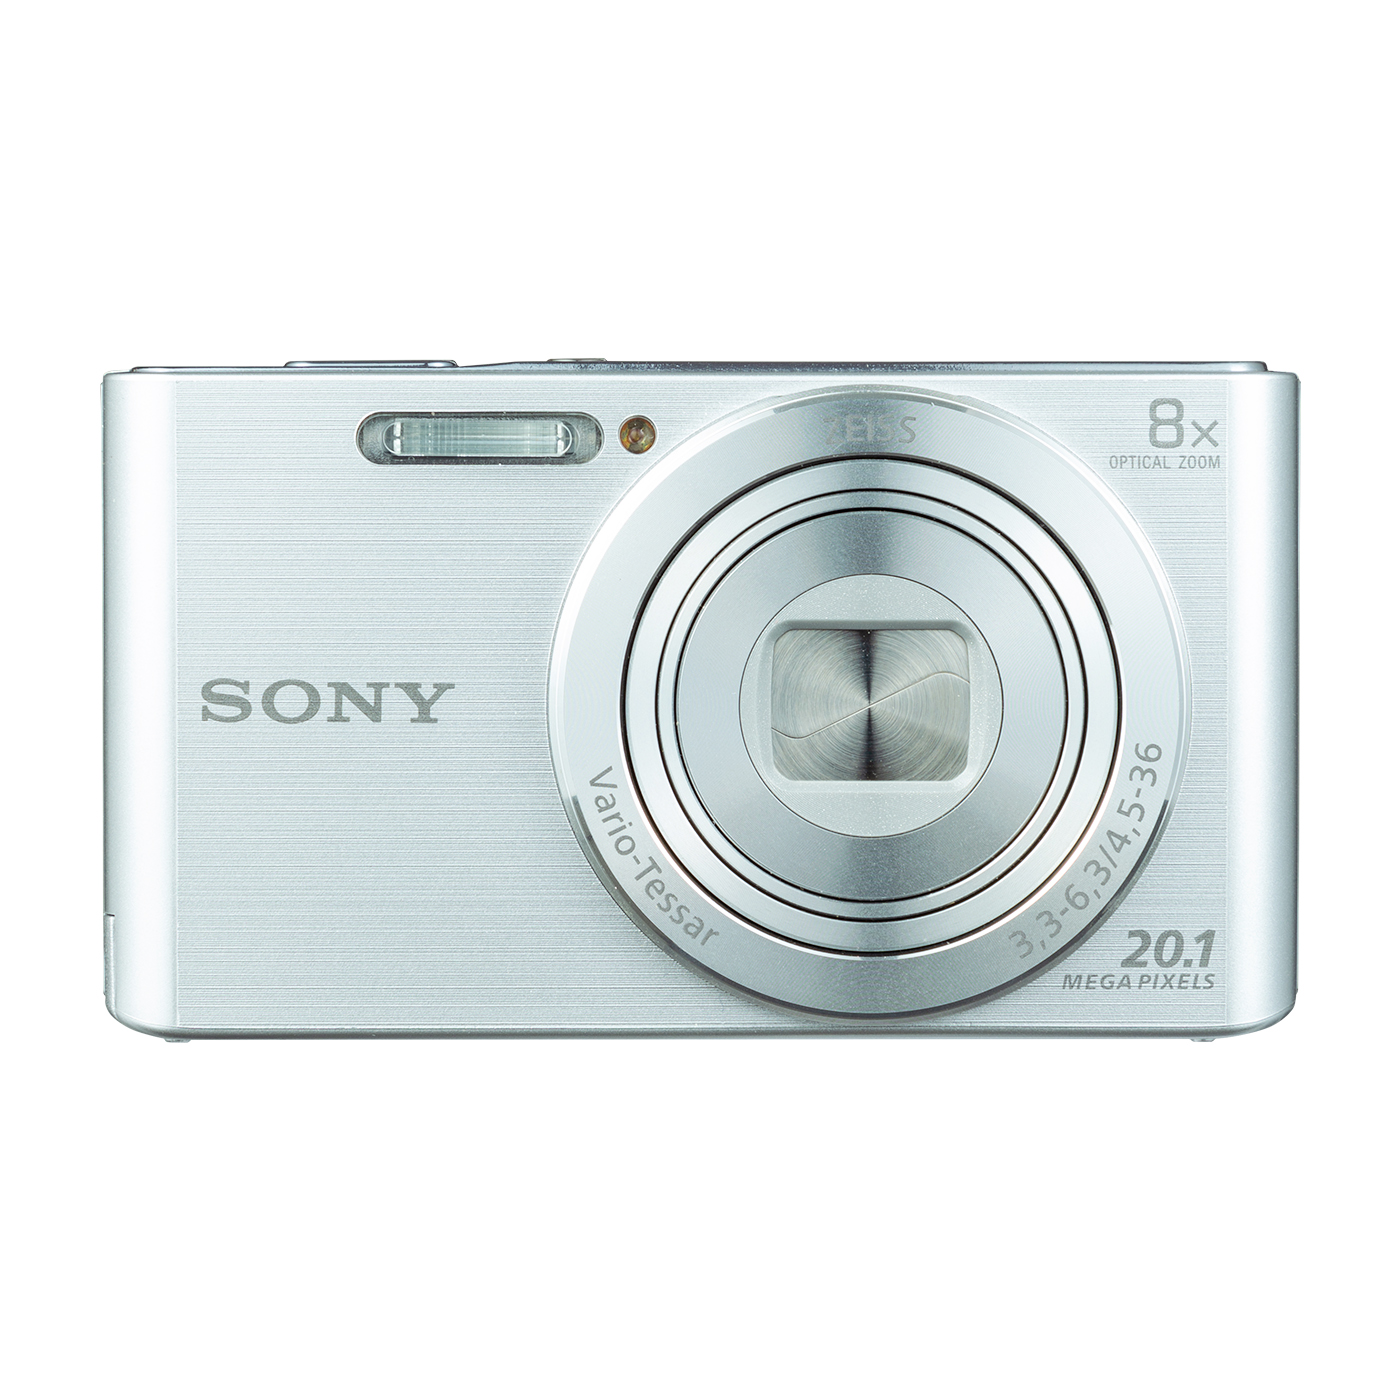 SONY デジタル カメラ CyberShot DSC-W350 ピンク - デジタルカメラ